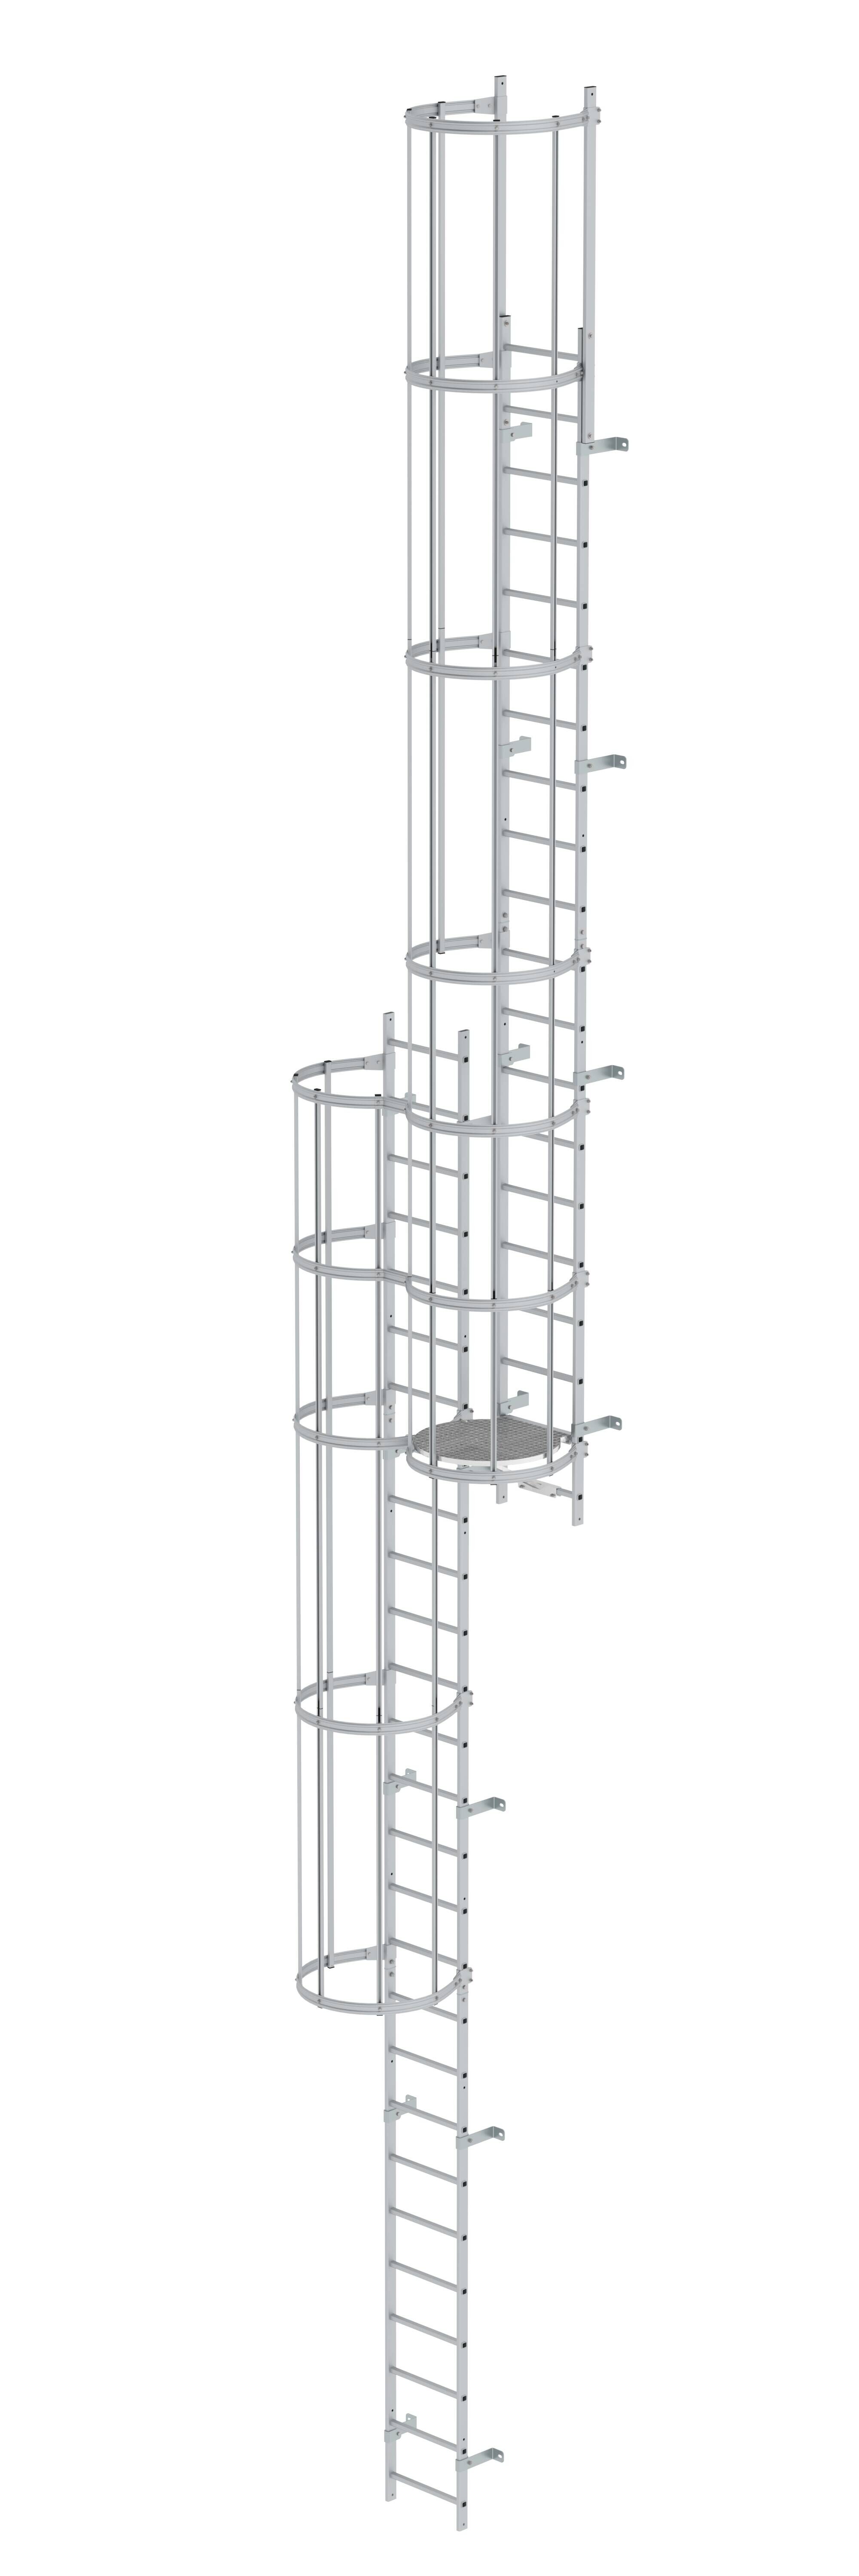 Mehrzügige Steigleiter mit Rückenschutz (Notleiter) Aluminium eloxiert 12,12m